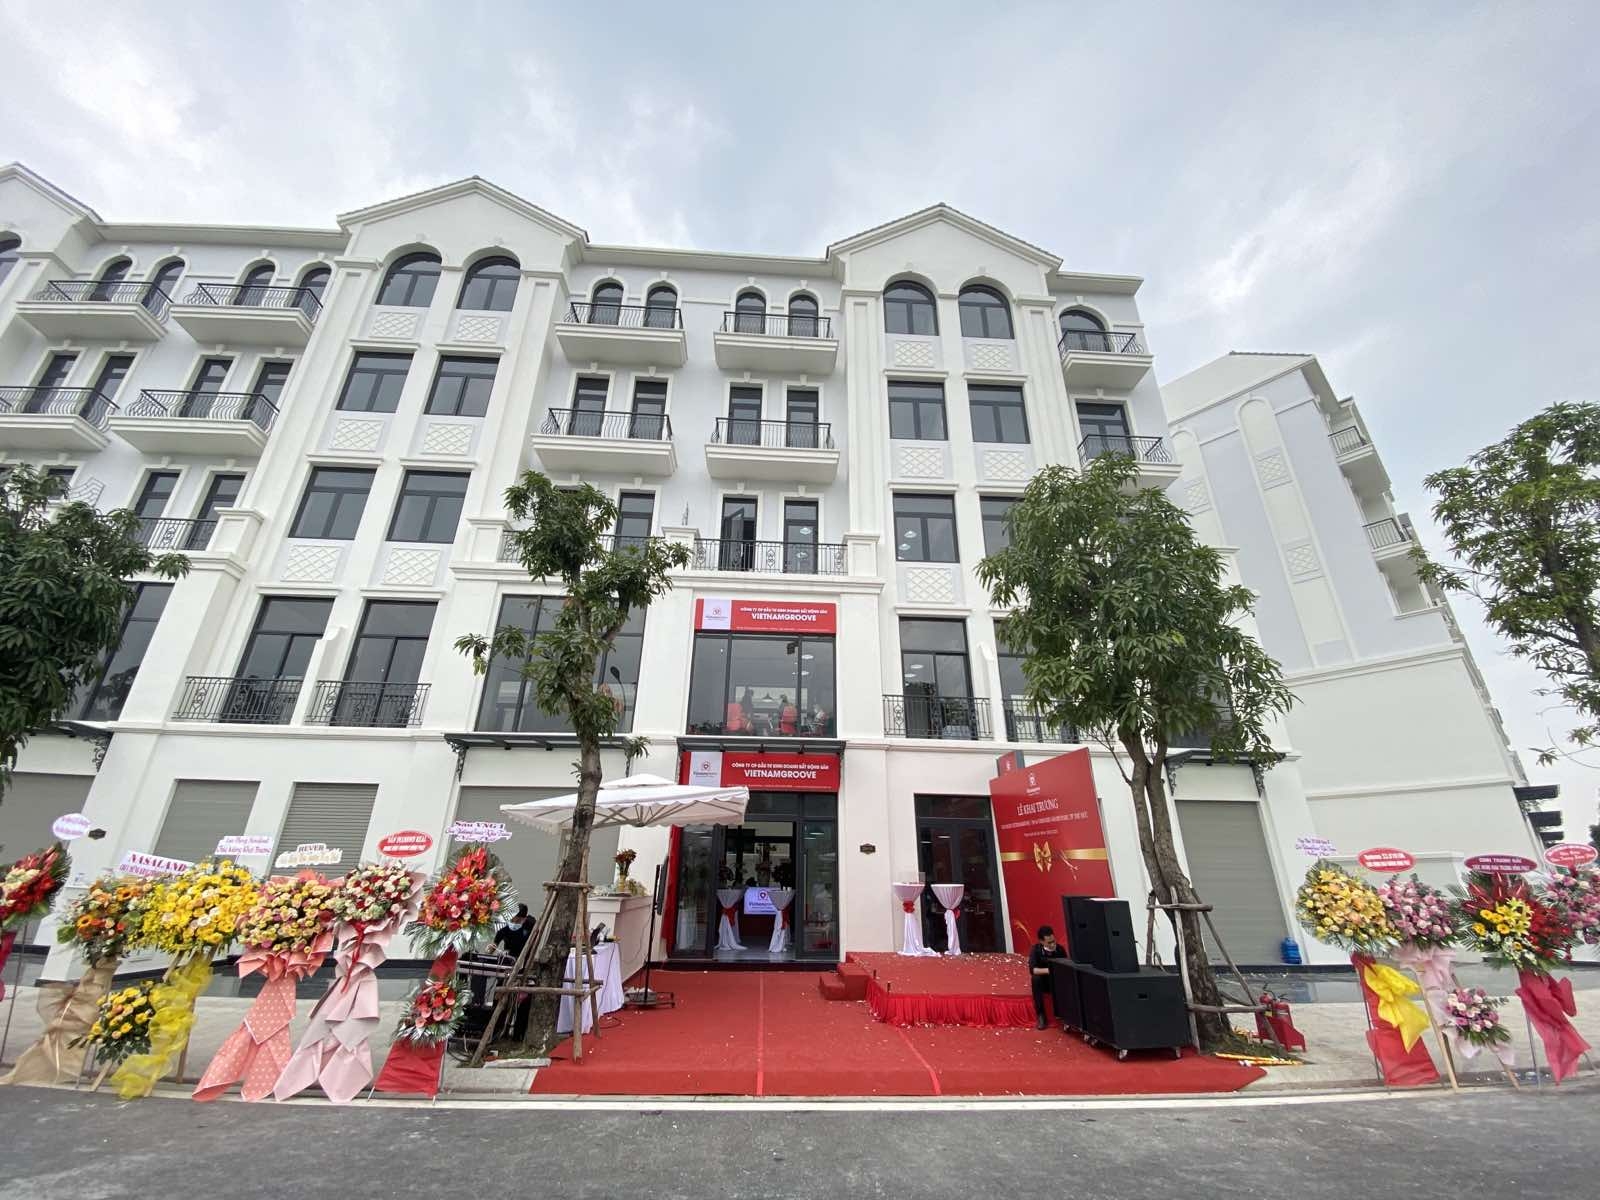 Vietnamgroove khai trương chi nhánh thành phố Thủ Đức - phục vụ người mua bất động sản khu Đông